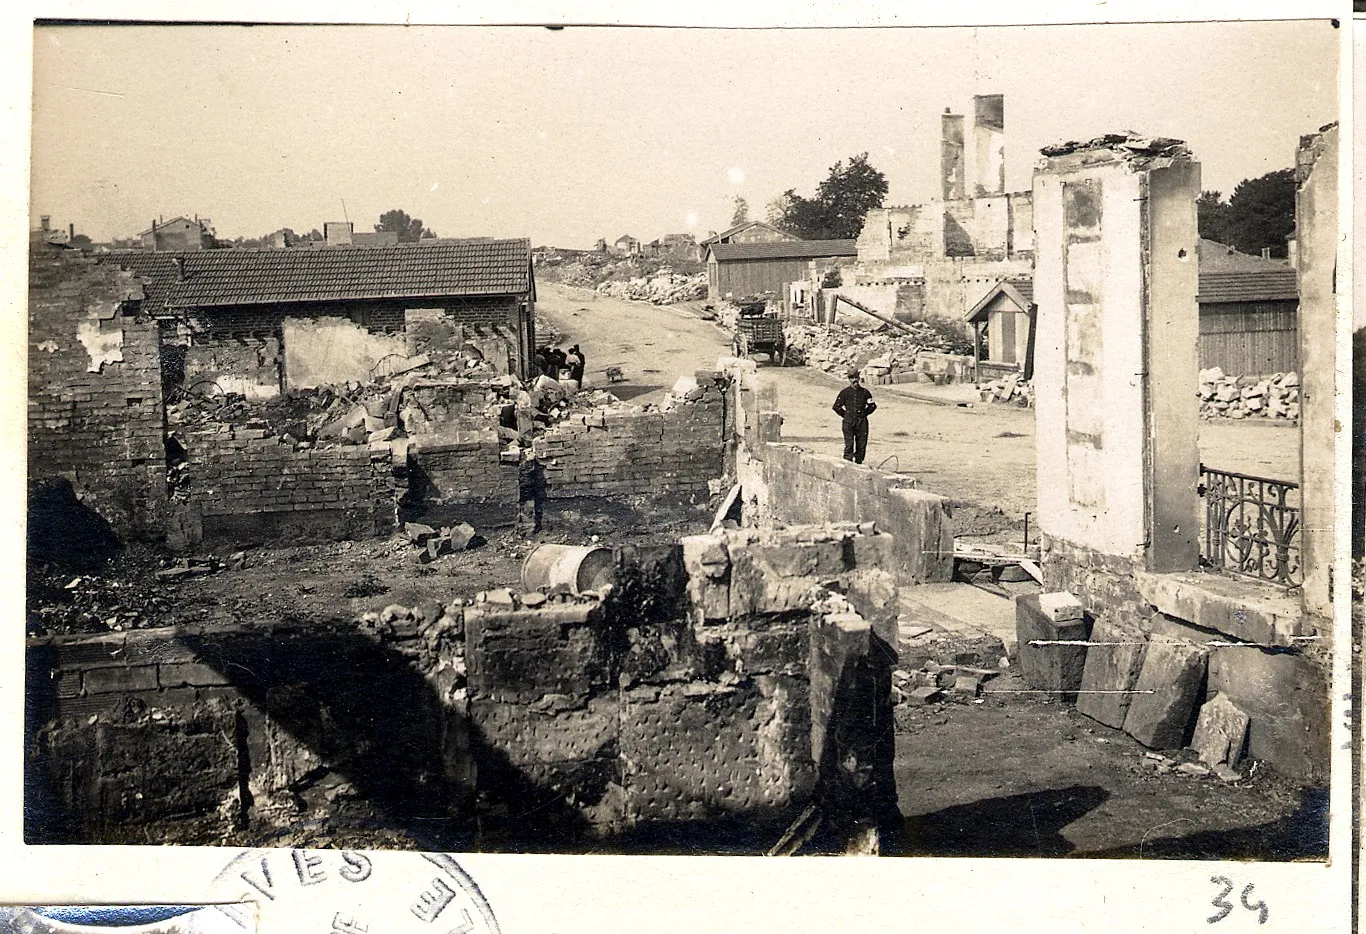 Photo showing: Vue de Sermaize-les-bains (Marne) en ruine suite à des bombardements, un soldat avec un brassard d'infirmier pose dans la rue principale.
1915.

Guerre 1914-1918.